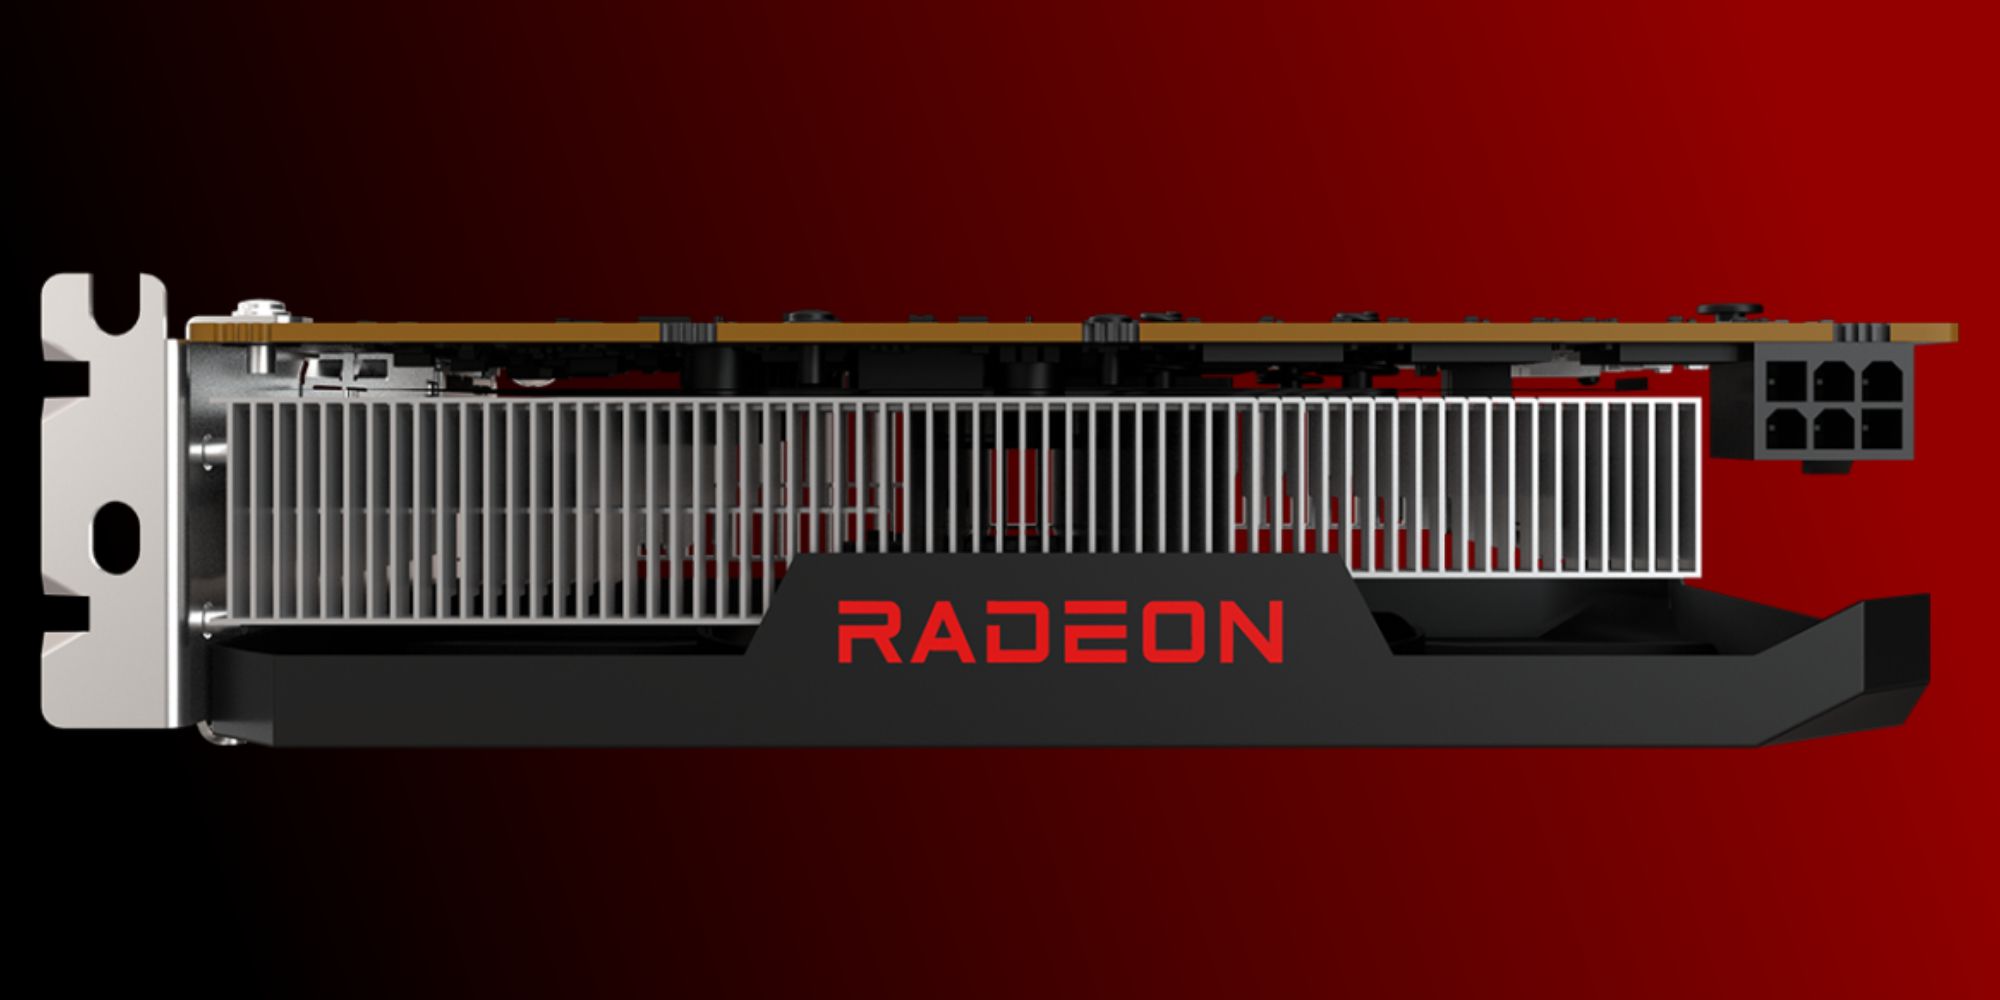 AMD's Radeon RX 6500 XT GPU